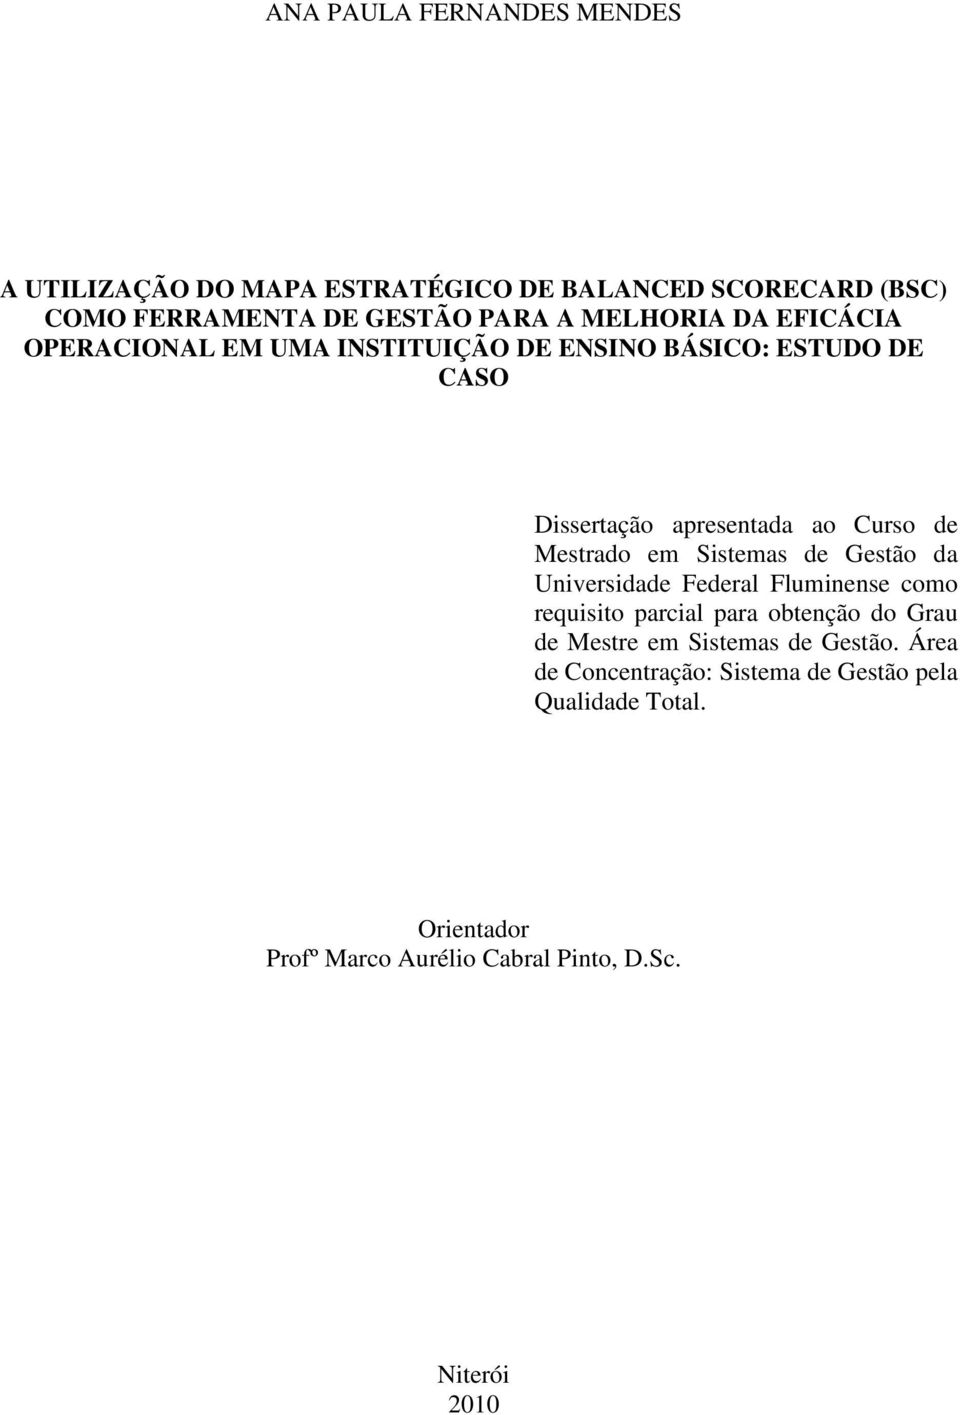 Mestrado em Sistemas de Gestão da Universidade Federal Fluminense como requisito parcial para obtenção do Grau de Mestre em